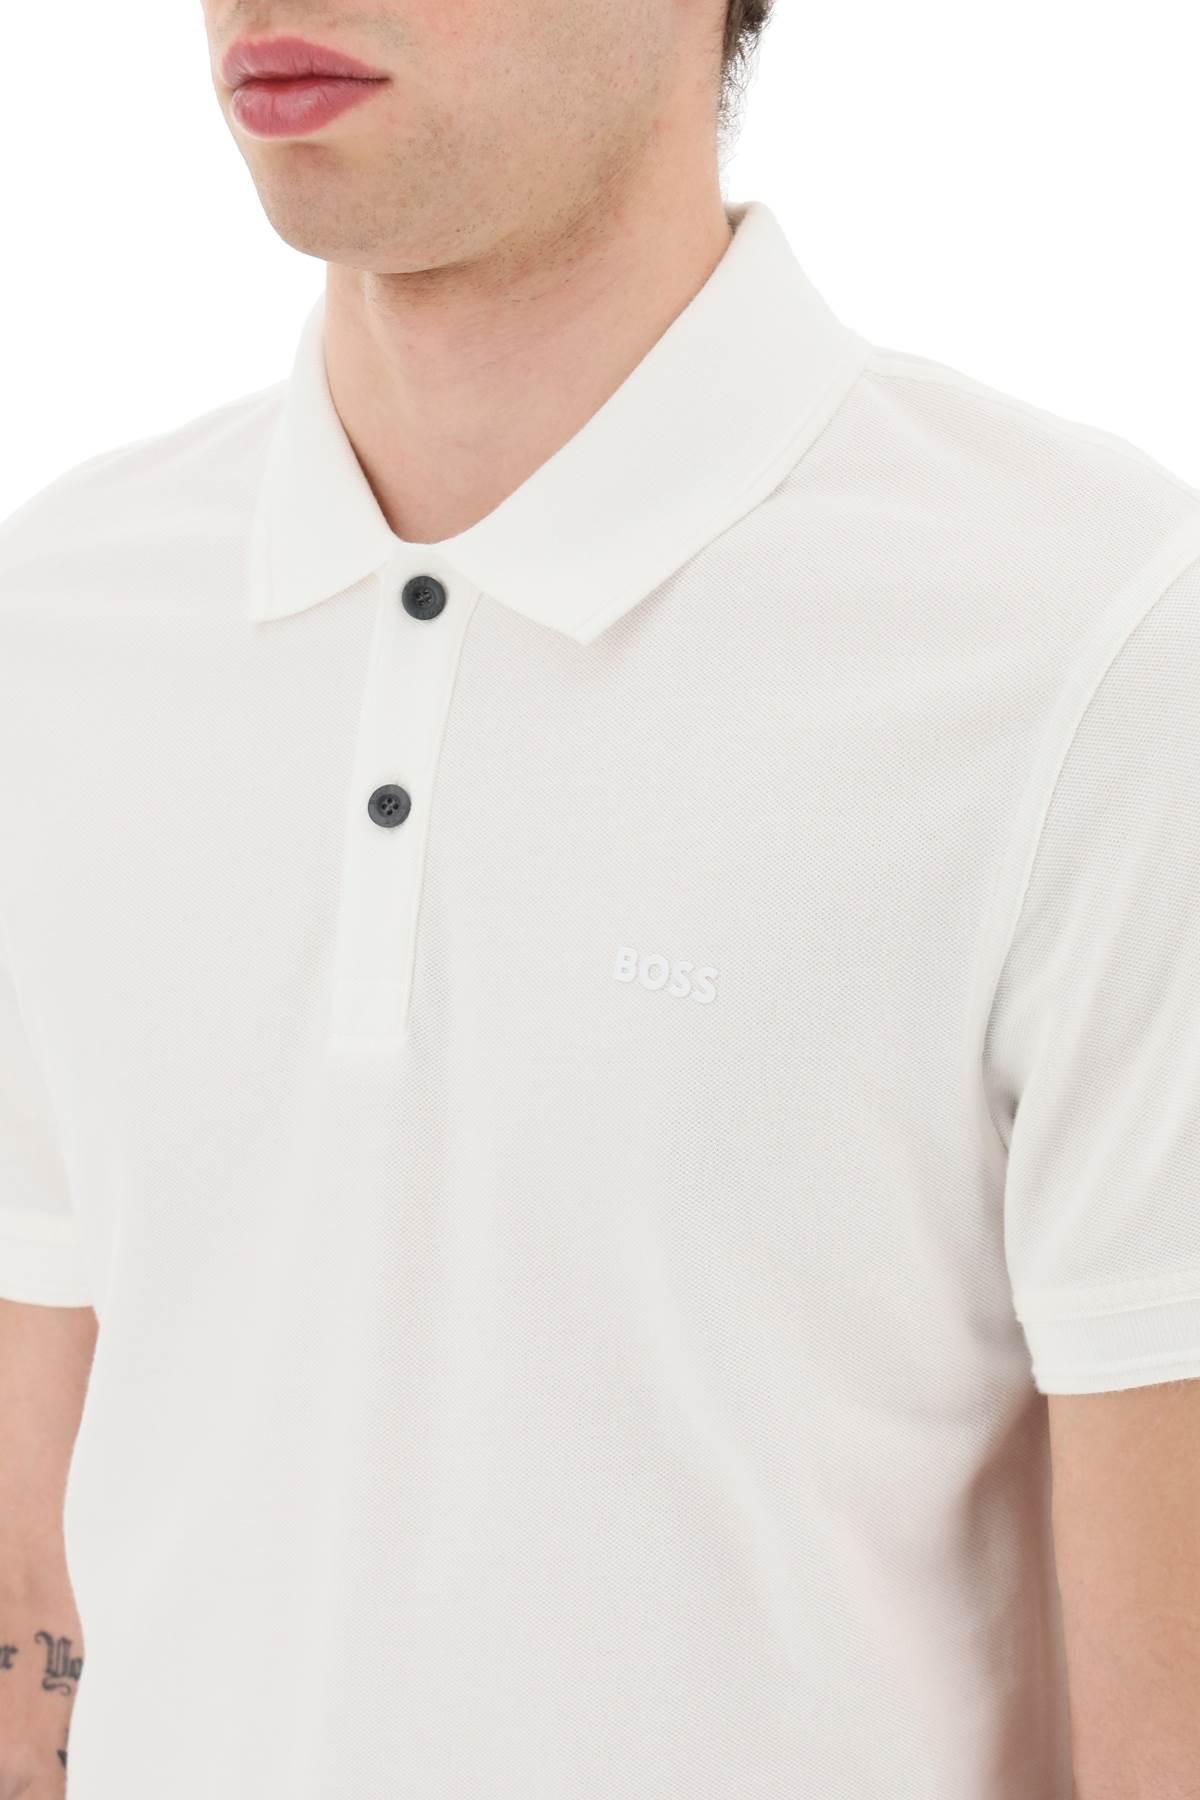 BOSS by HUGO BOSS Slim Fit Prime Polo Shirt in White for Men | Lyst